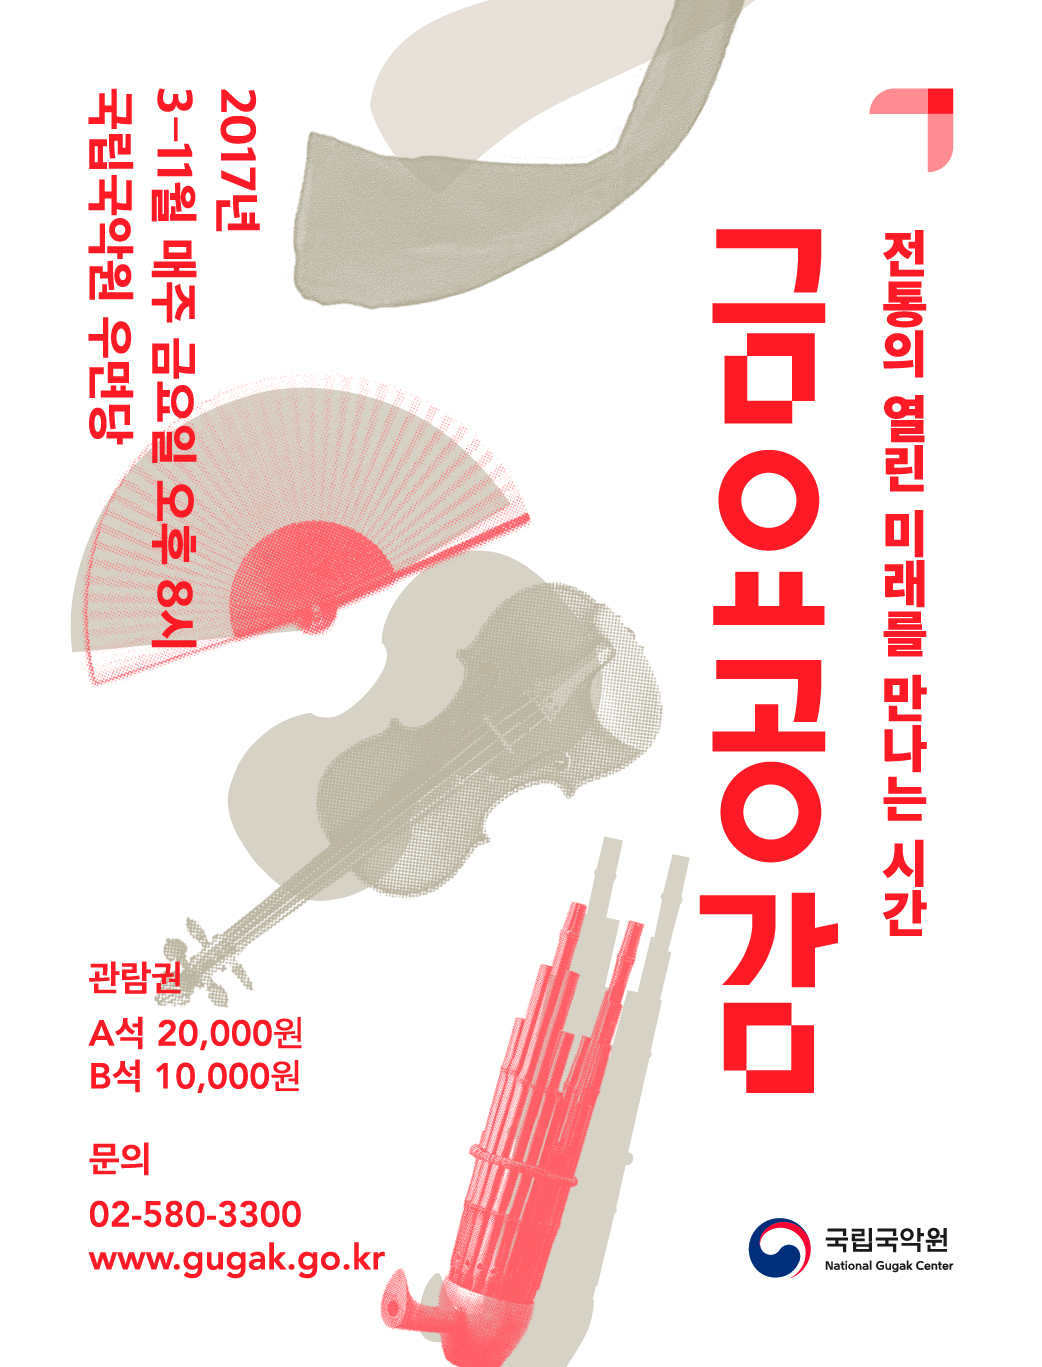 문화릴레이티켓 초대이벤트 국립국악원 '금요공감-2차'